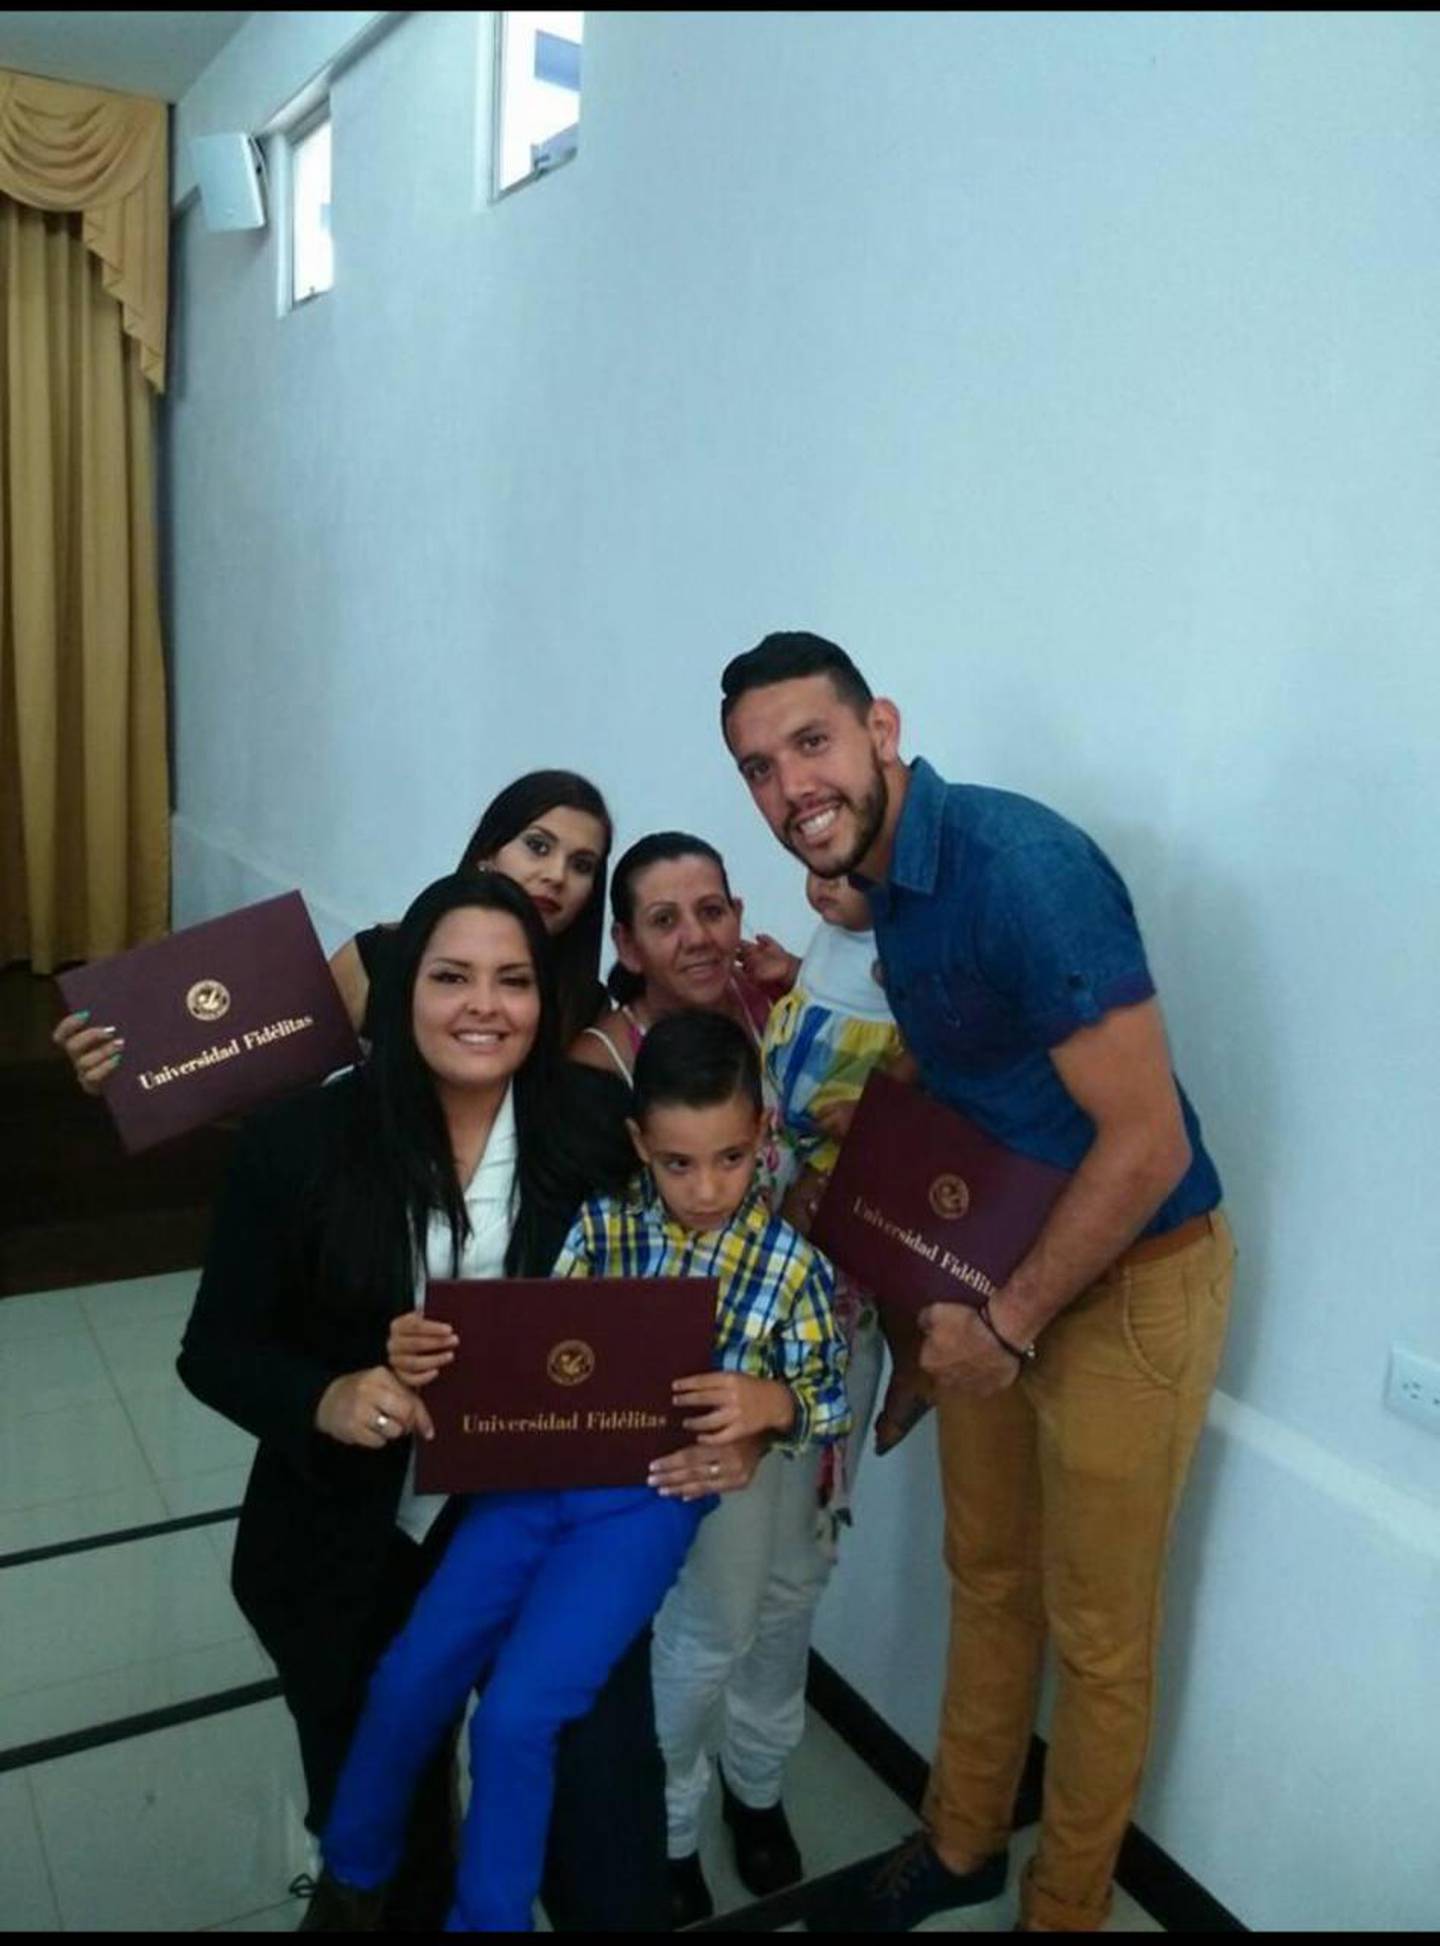 Aquella graduación de Leonel Moreira y Julieth Granados fue un verdadero triunfo familiar, porque a los dos les costó obtener ese título universitario.